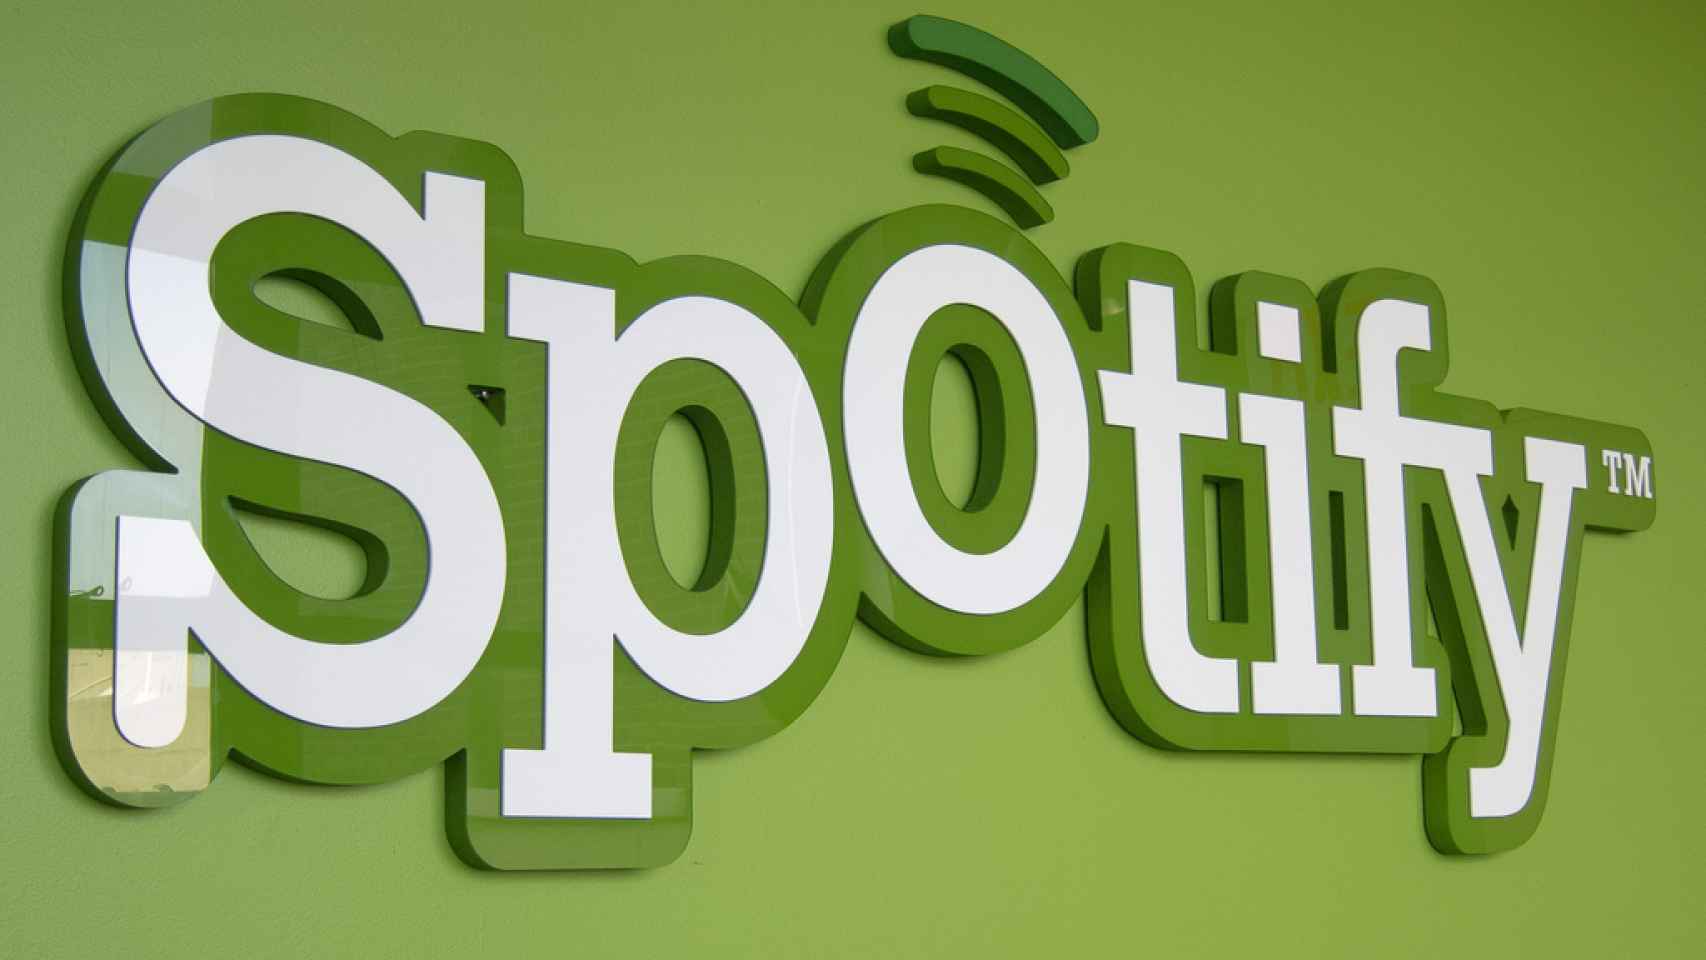 Spotify lleva meses poniendo en peligro tu disco duro